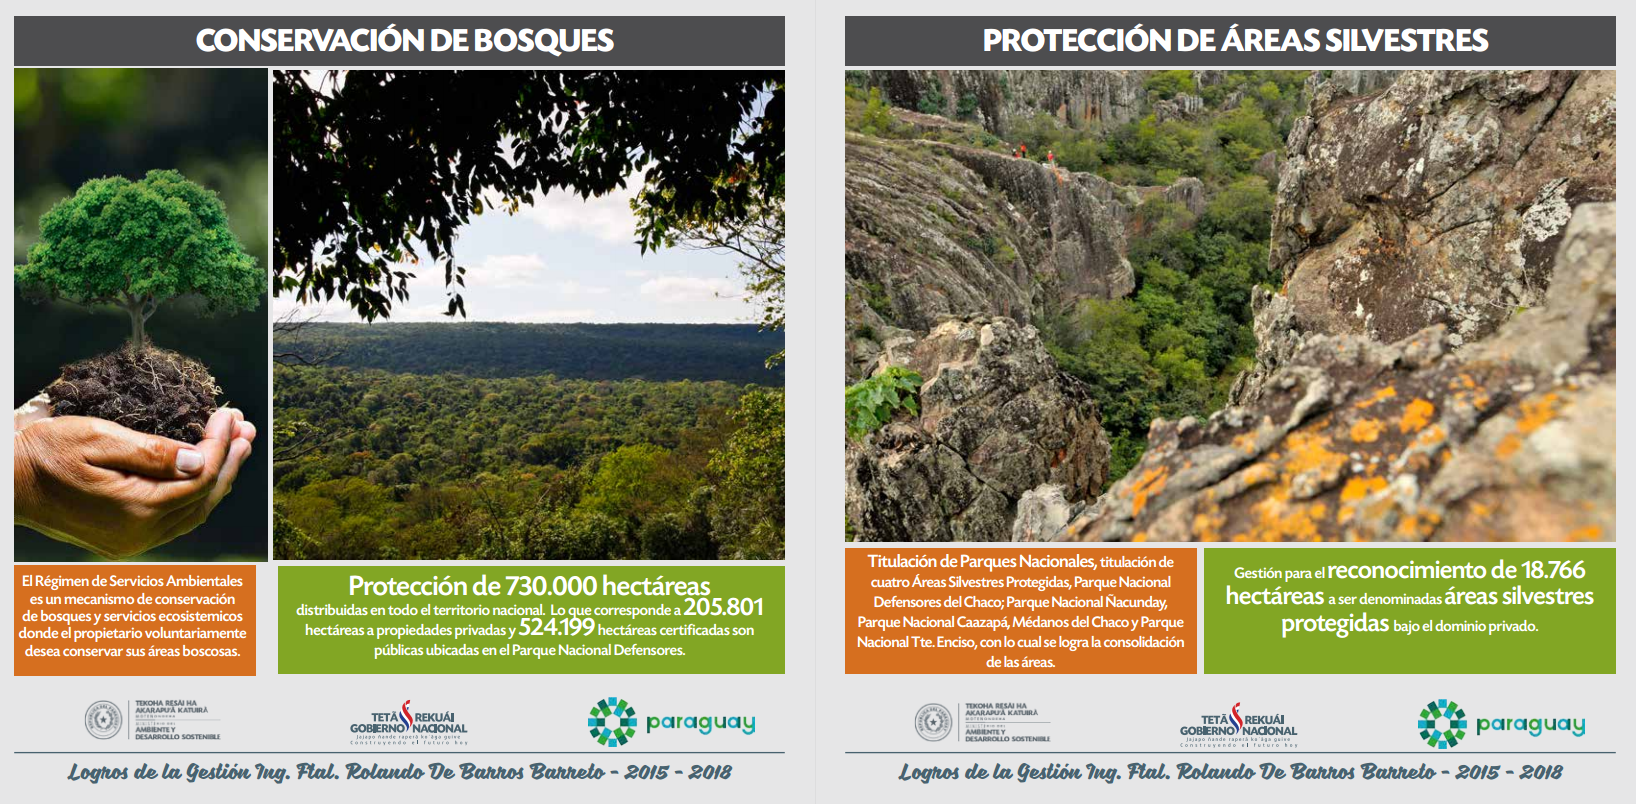 Ministerio del Ambiente promovió la Conservación de Bosques y Áreas Protegidas